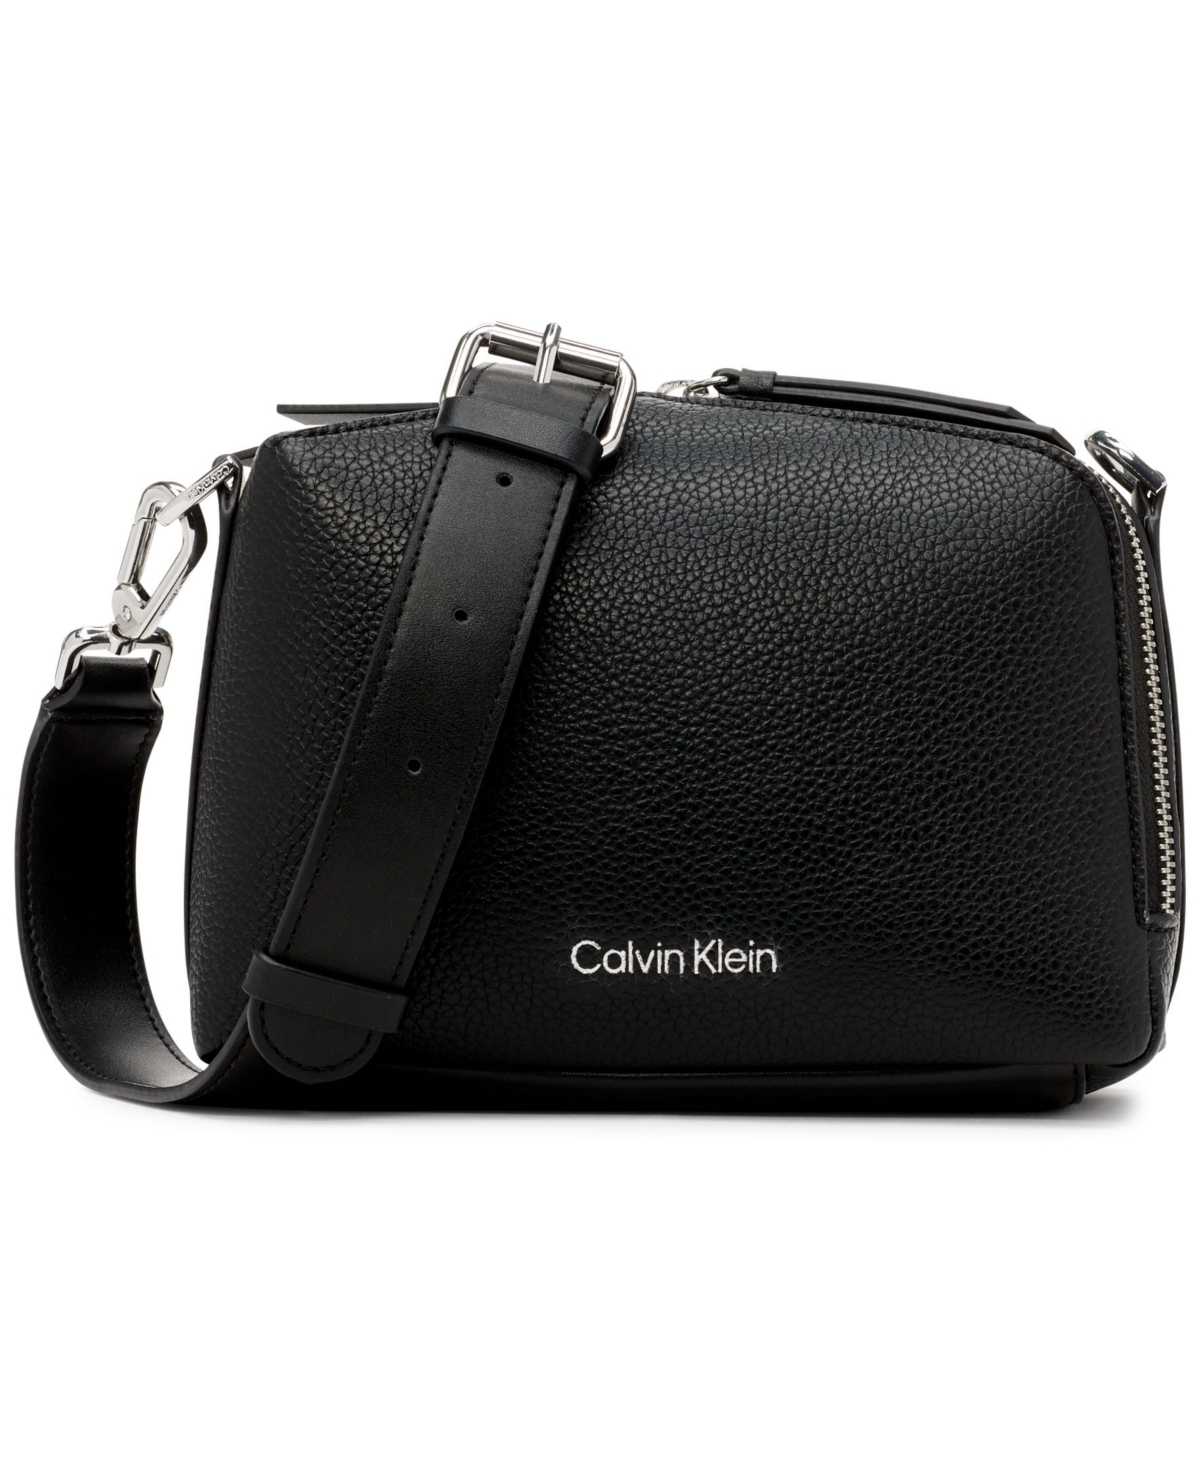 CALVIN KLEIN Bags for Women | ModeSens